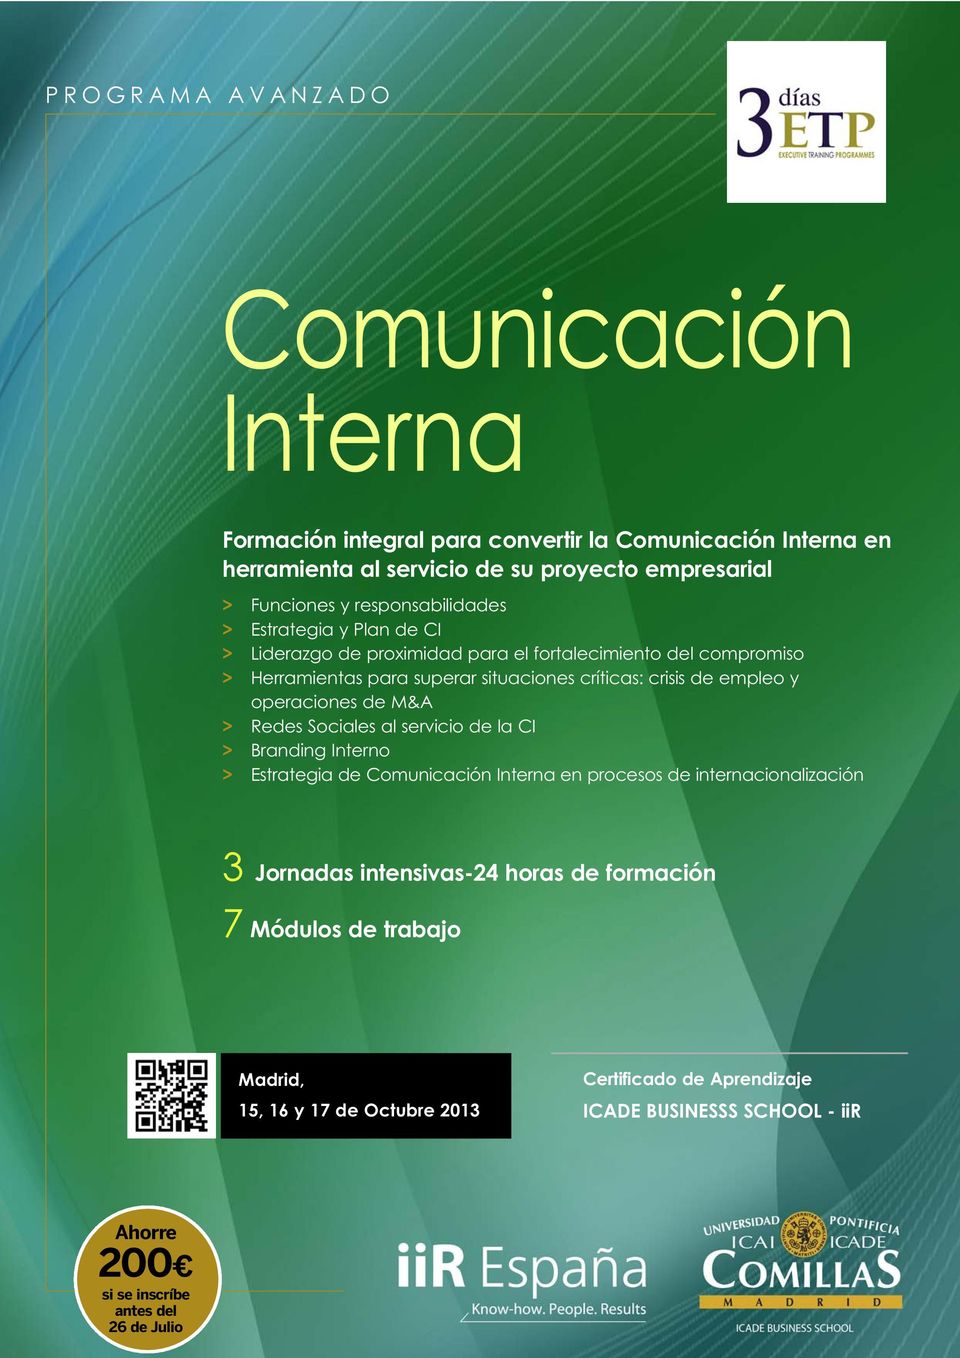 empleo y operaciones de M&A > Redes Sociales al servicio de la CI > Branding Interno > Estrategia de Comunicación Interna en procesos de internacionalización 3 Jornadas